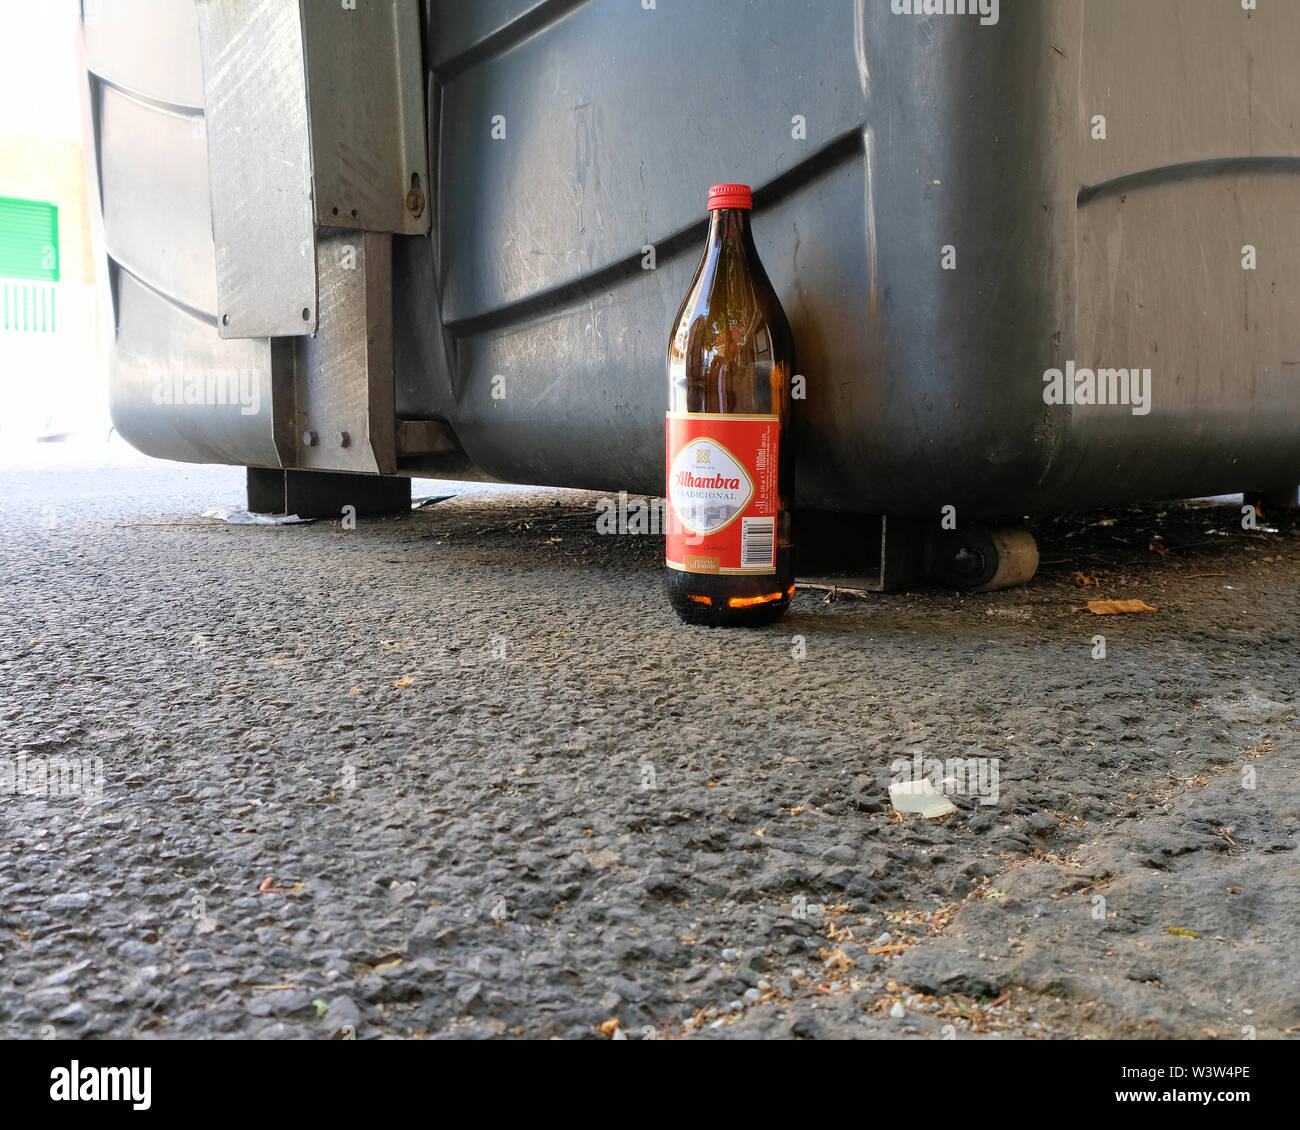 https://c8.alamy.com/compes/w3w4pe/una-botella-de-un-litro-de-cerveza-tradicional-alhmabra-abandonados-por-el-lado-de-la-calle-cerca-de-una-papelera-y-acera-en-granada-espana-w3w4pe.jpg